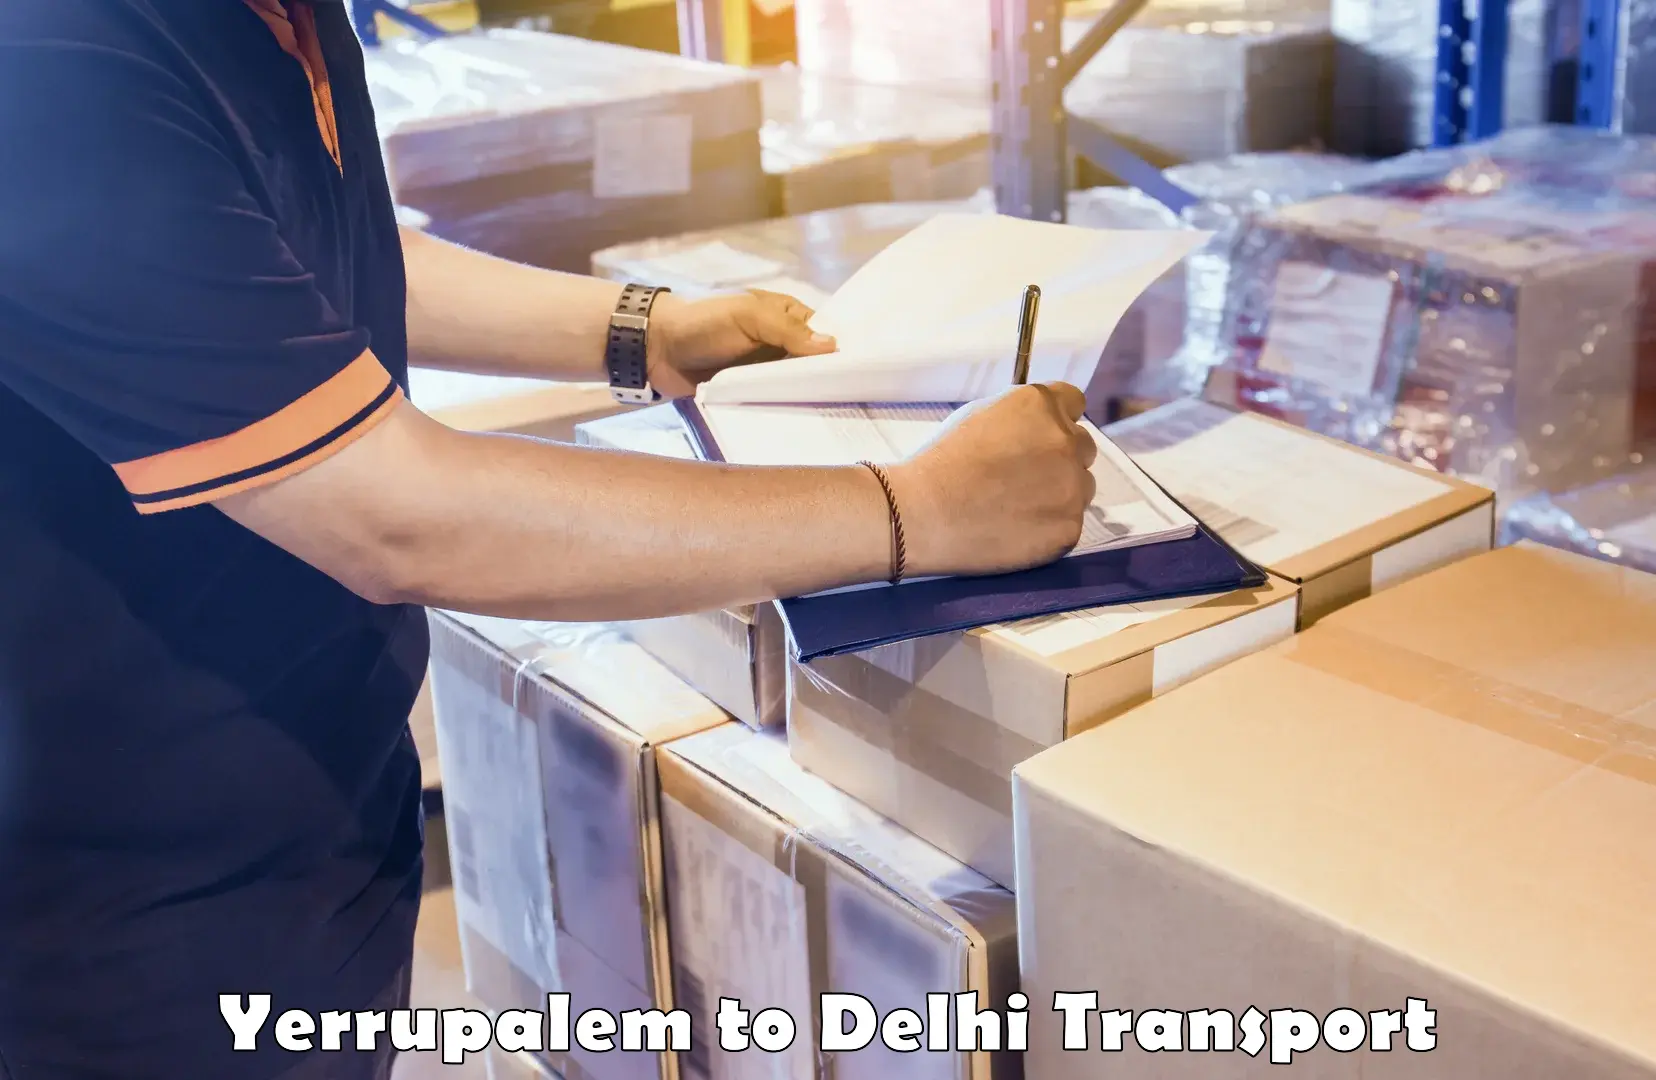 Bike shipping service Yerrupalem to Delhi